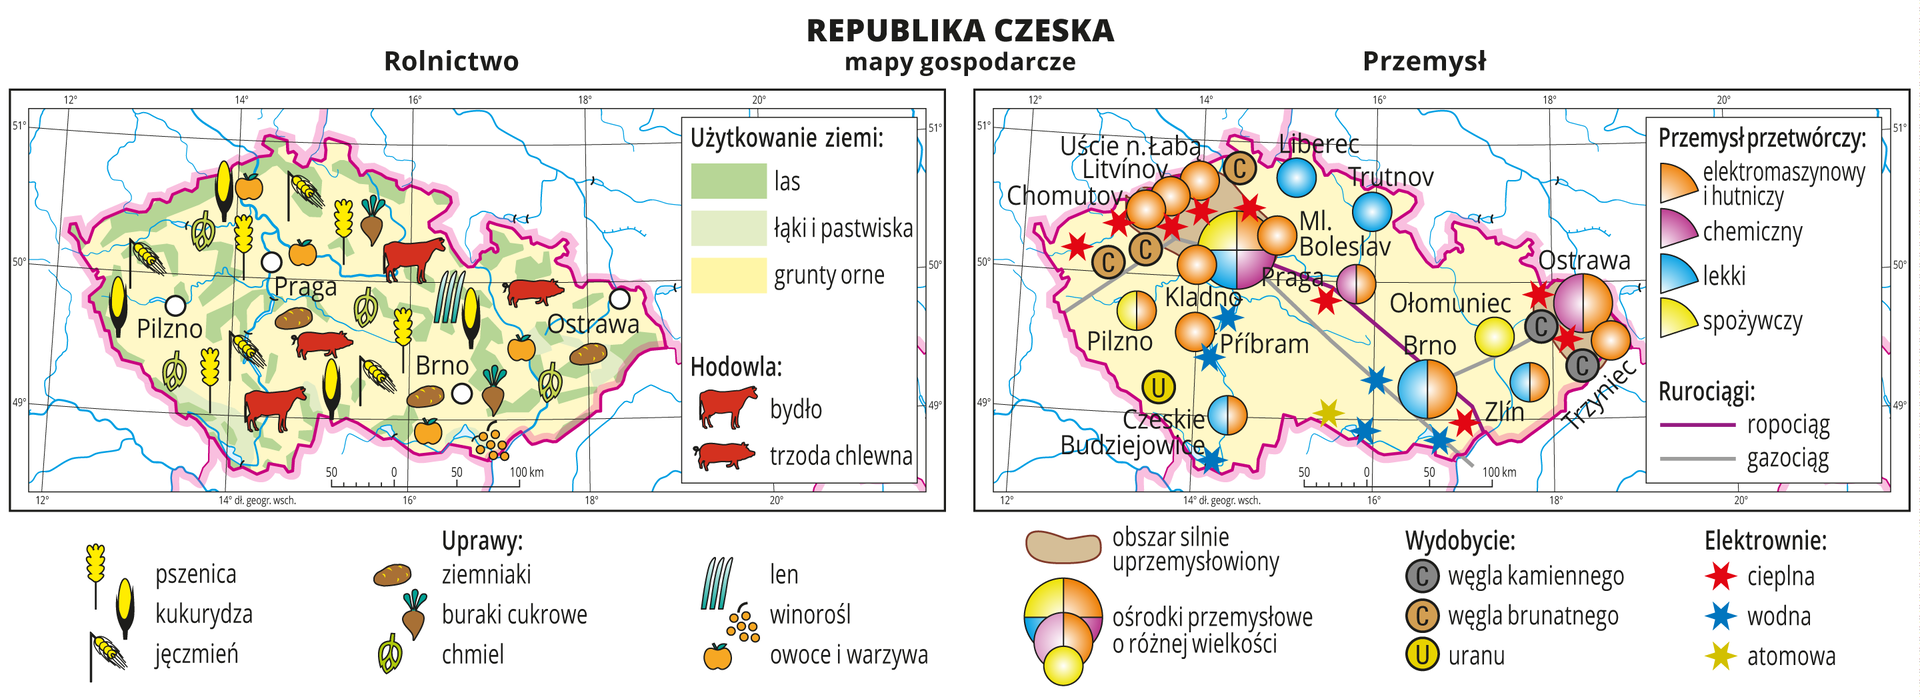 Ilustracja przedstawia dwie mapy gospodarcze Republiki Czeskiej. Mapa pierwsza – rolnictwo, mapa druga – przemysł. Na mapie rolnictwa tło w kolorze żółtym (grunty orne), jasnozielonym (łąki i pastwiska) i zielonym (lasy). Na mapie sygnatury obrazujące uprawy roślin (pszenica, kukurydza, jęczmień, ziemniaki, buraki cukrowe, chmiel, len, winorośl, owoce i warzywa) oraz hodowlę zwierząt (bydło, trzoda chlewna). Na mapie przemysłu sygnatury kołowe – ośrodki przemysłowe. Duże w Pradze, Ostrawie, Brnie, kilkanaście mniejszych. Przemysł elektromaszynowy i hutniczy w przewadze, chemiczny, lekki oraz spożywczy. Kilka elektrowni cieplnych i wodnych oznaczonych kolorowymi gwiazdkami, jedna elektrownia atomowa, ropociąg i gazociąg oznaczone liniami. Sygnaturami oznaczone wydobycie węgla kamiennego, węgla brunatnego i uranu. Obie mapy zawierają południki i równoleżniki, dookoła map w białych ramkach opisano współrzędne.